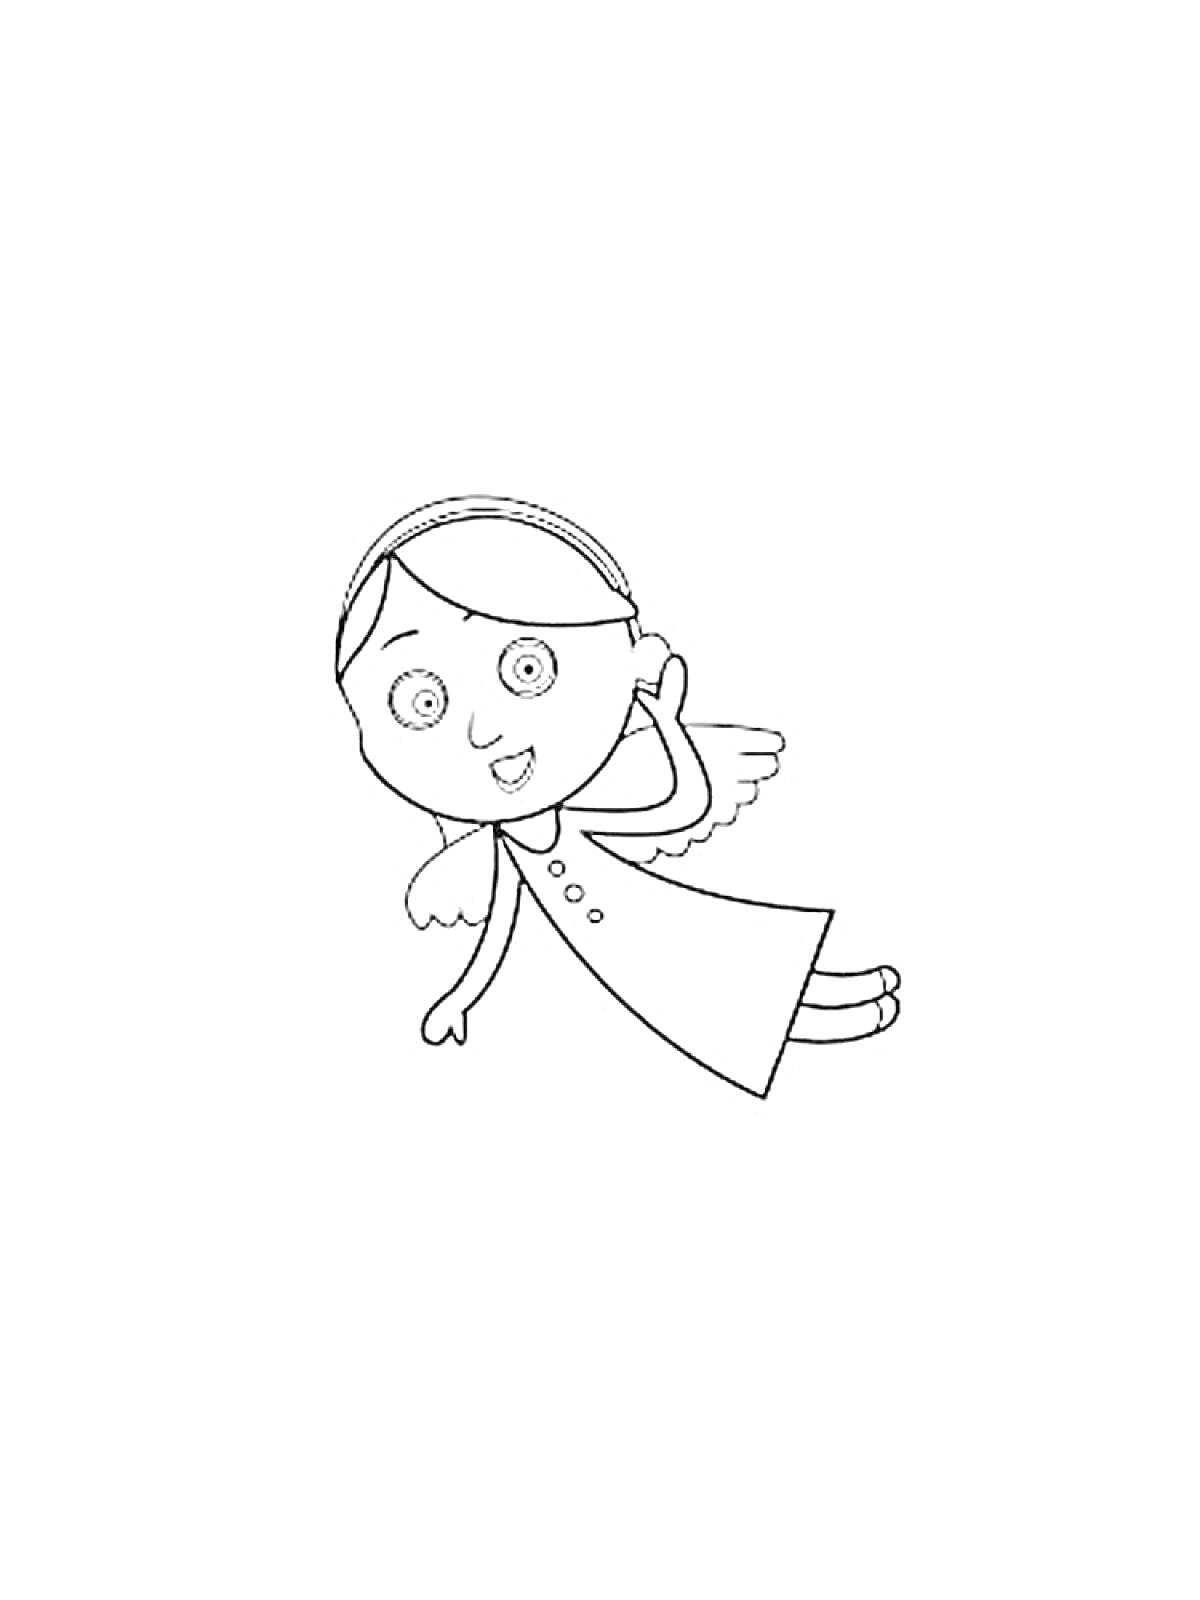 Раскраска Раскраска с Ангелом Бэби, летающим с прижатыми к голове руками